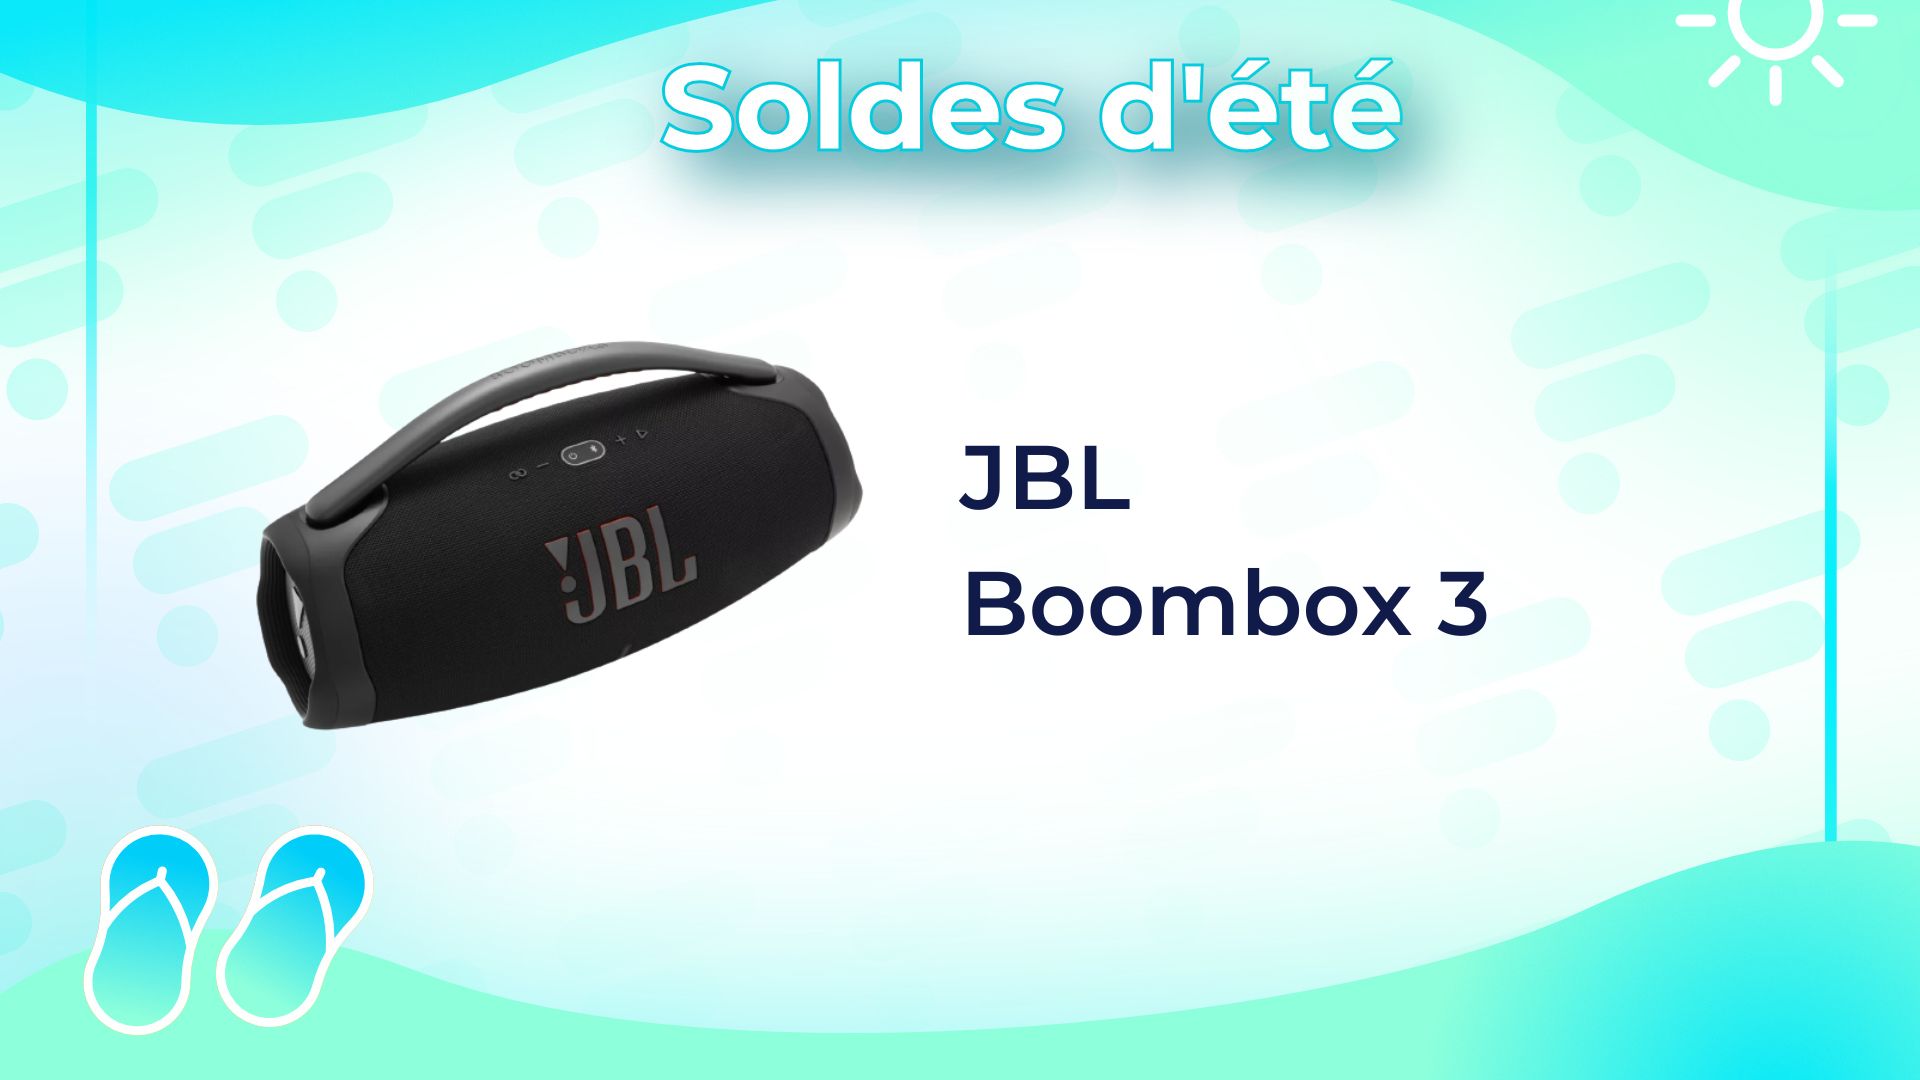 JBL Boombox 3 : cette massive et puissante enceinte perd 200